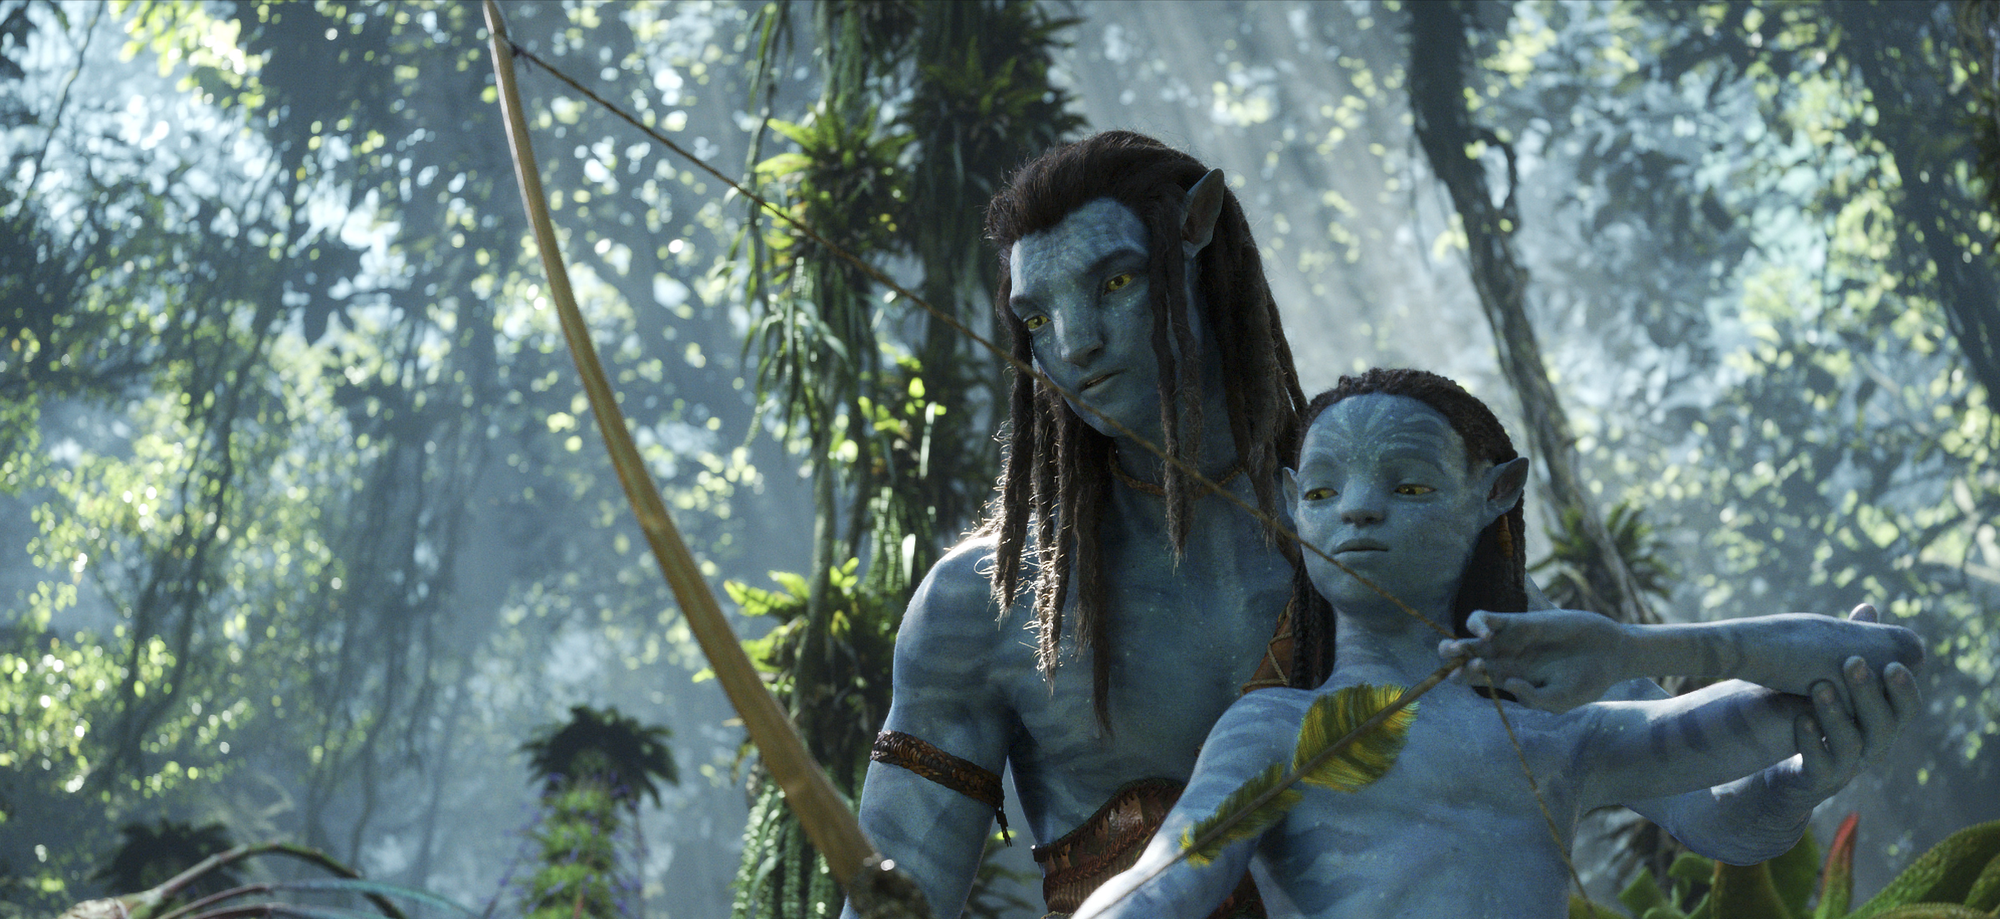 Phần 5 này hứa hẹn sẽ đưa người xem vào một chuyến phiêu lưu tuyệt vời, khám phá những hành tinh xa xôi và vùng đất đầy bí ẩn. Với công nghệ tân tiến, hình ảnh chân thật và nội dung đầy hấp dẫn, đây chắc chắn sẽ là một trải nghiệm giải trí tuyệt vời cho khán giả. Hãy sẵn sàng cho một cuộc phiêu lưu đầy kinh ngạc cùng Avatar 5!